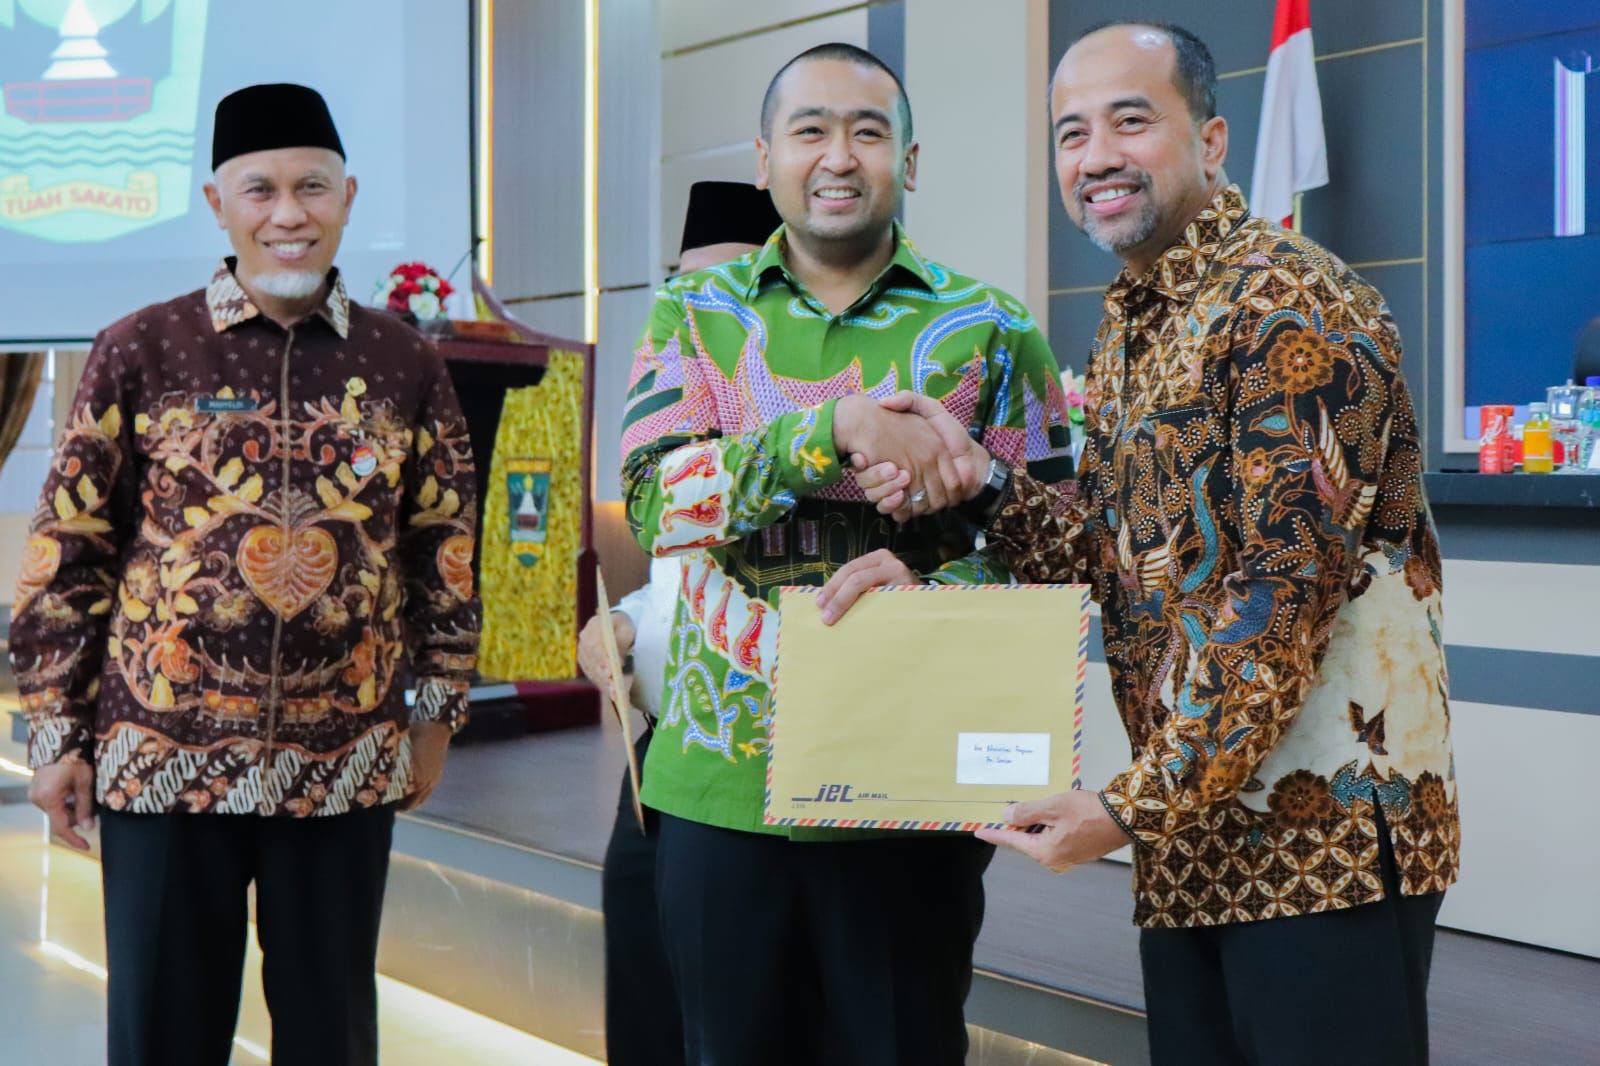 Penyerahan penghargaan oleh Wakil Gubernur Sumbar Audy Joinaldy kepada Kepala Biro Adpim Sumbar. (Foto: Biro Adpim Sumbar)